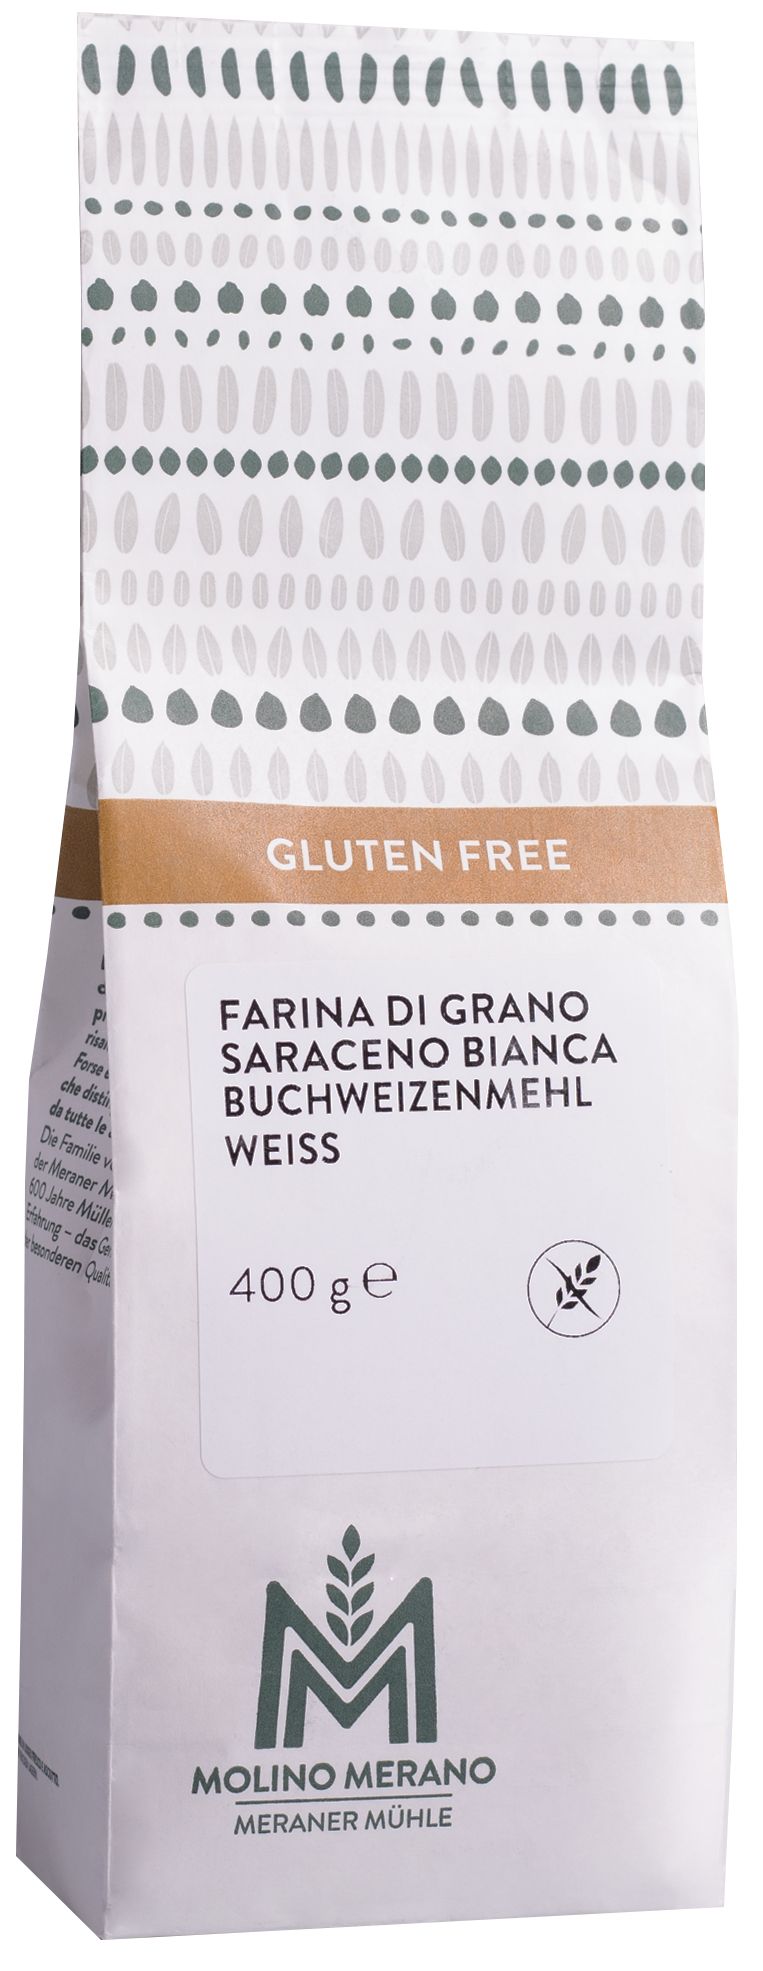 White buckwheat flour gluten free